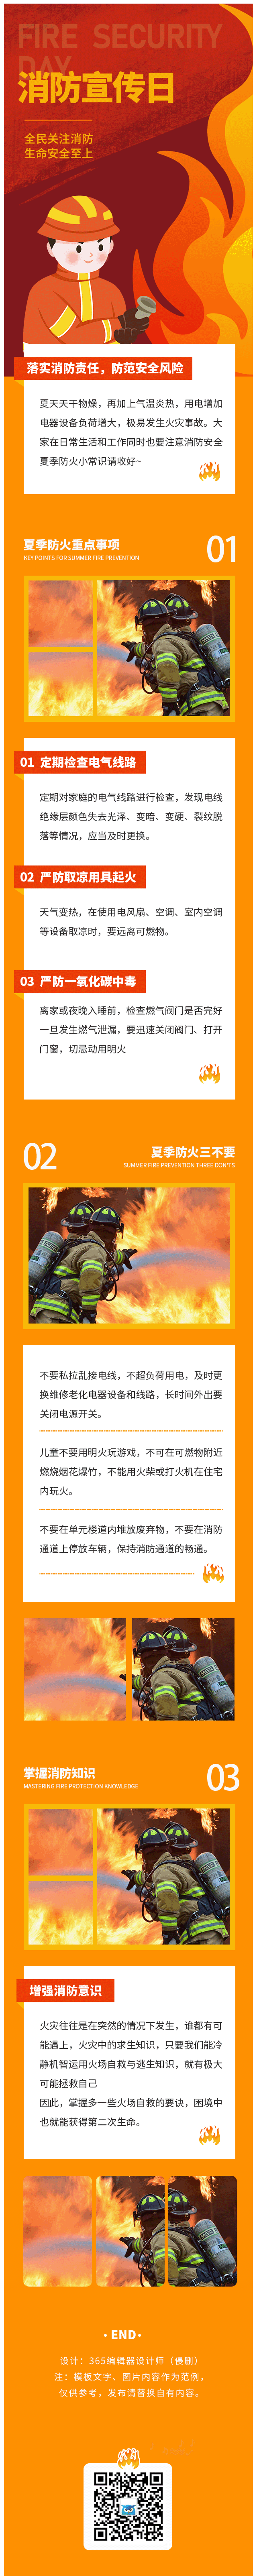 消防安全防火安全风险消防宣传日防火注意事项简约